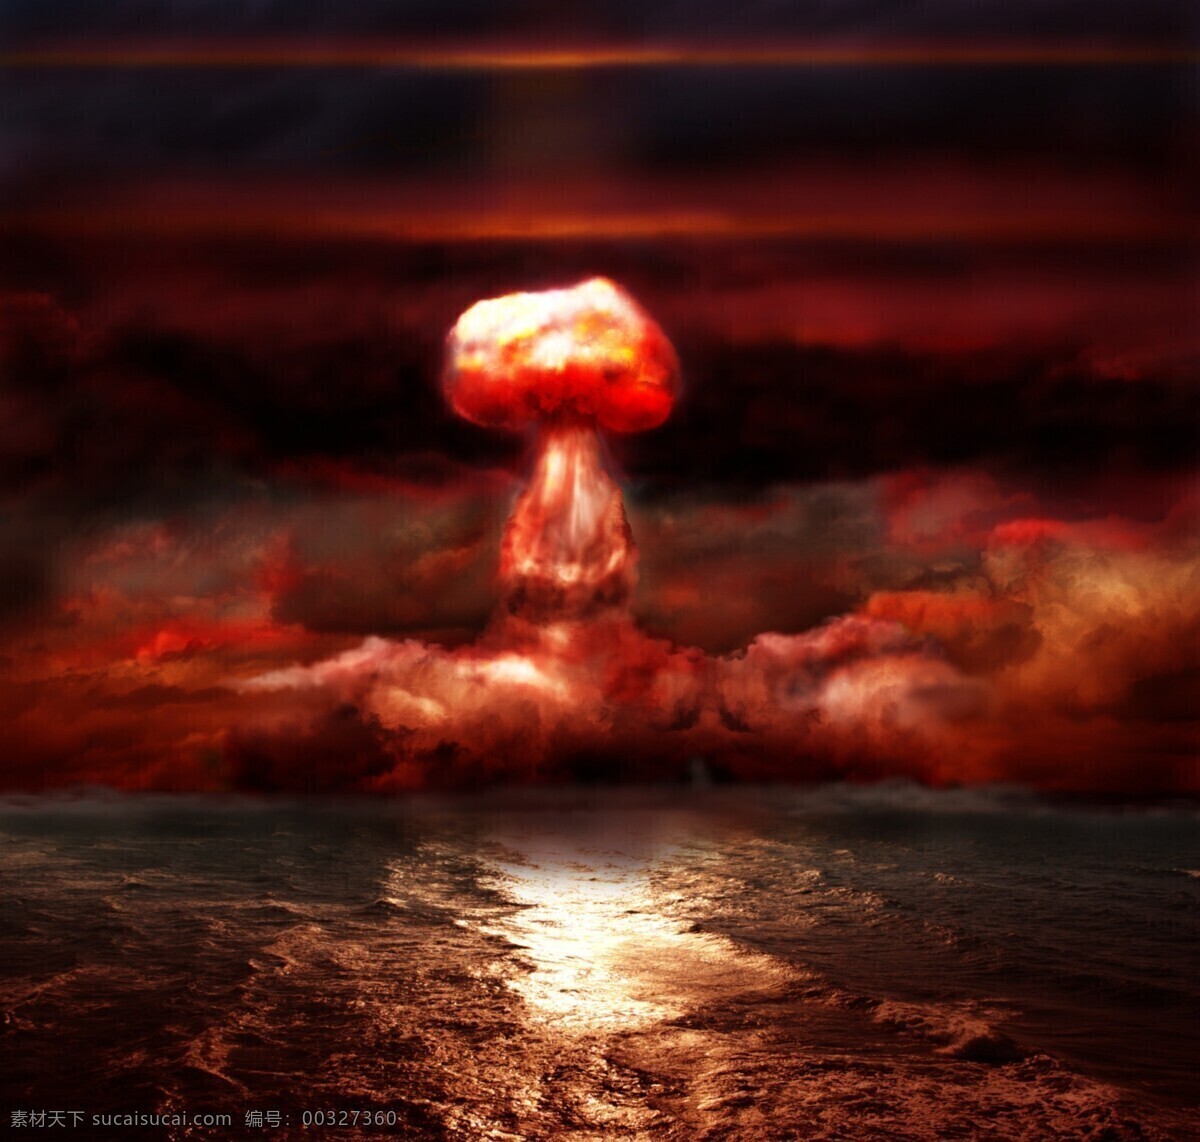 海面 原子弹 爆炸 原子弹爆炸 大海 海洋 炸弹 核武器 核爆炸 蘑菇云 其他类别 生活百科